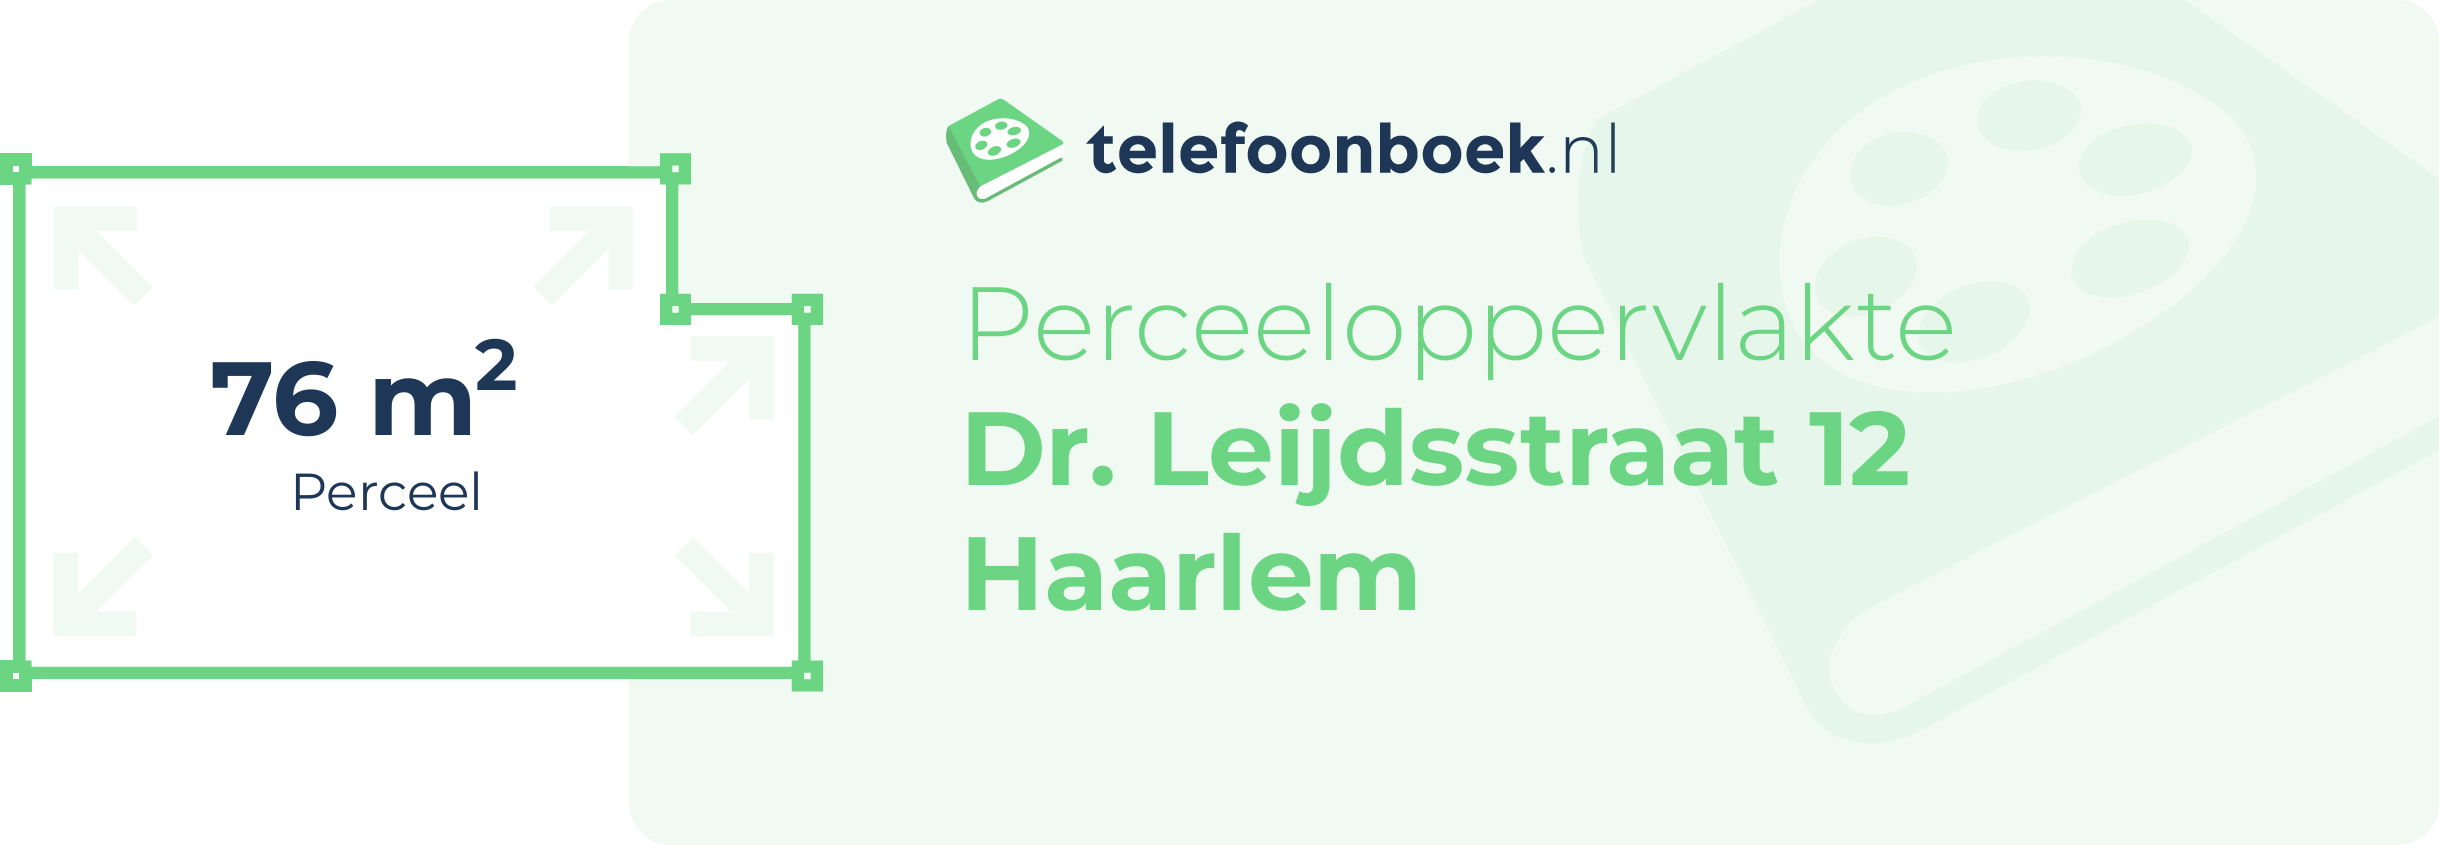 Perceeloppervlakte Dr. Leijdsstraat 12 Haarlem